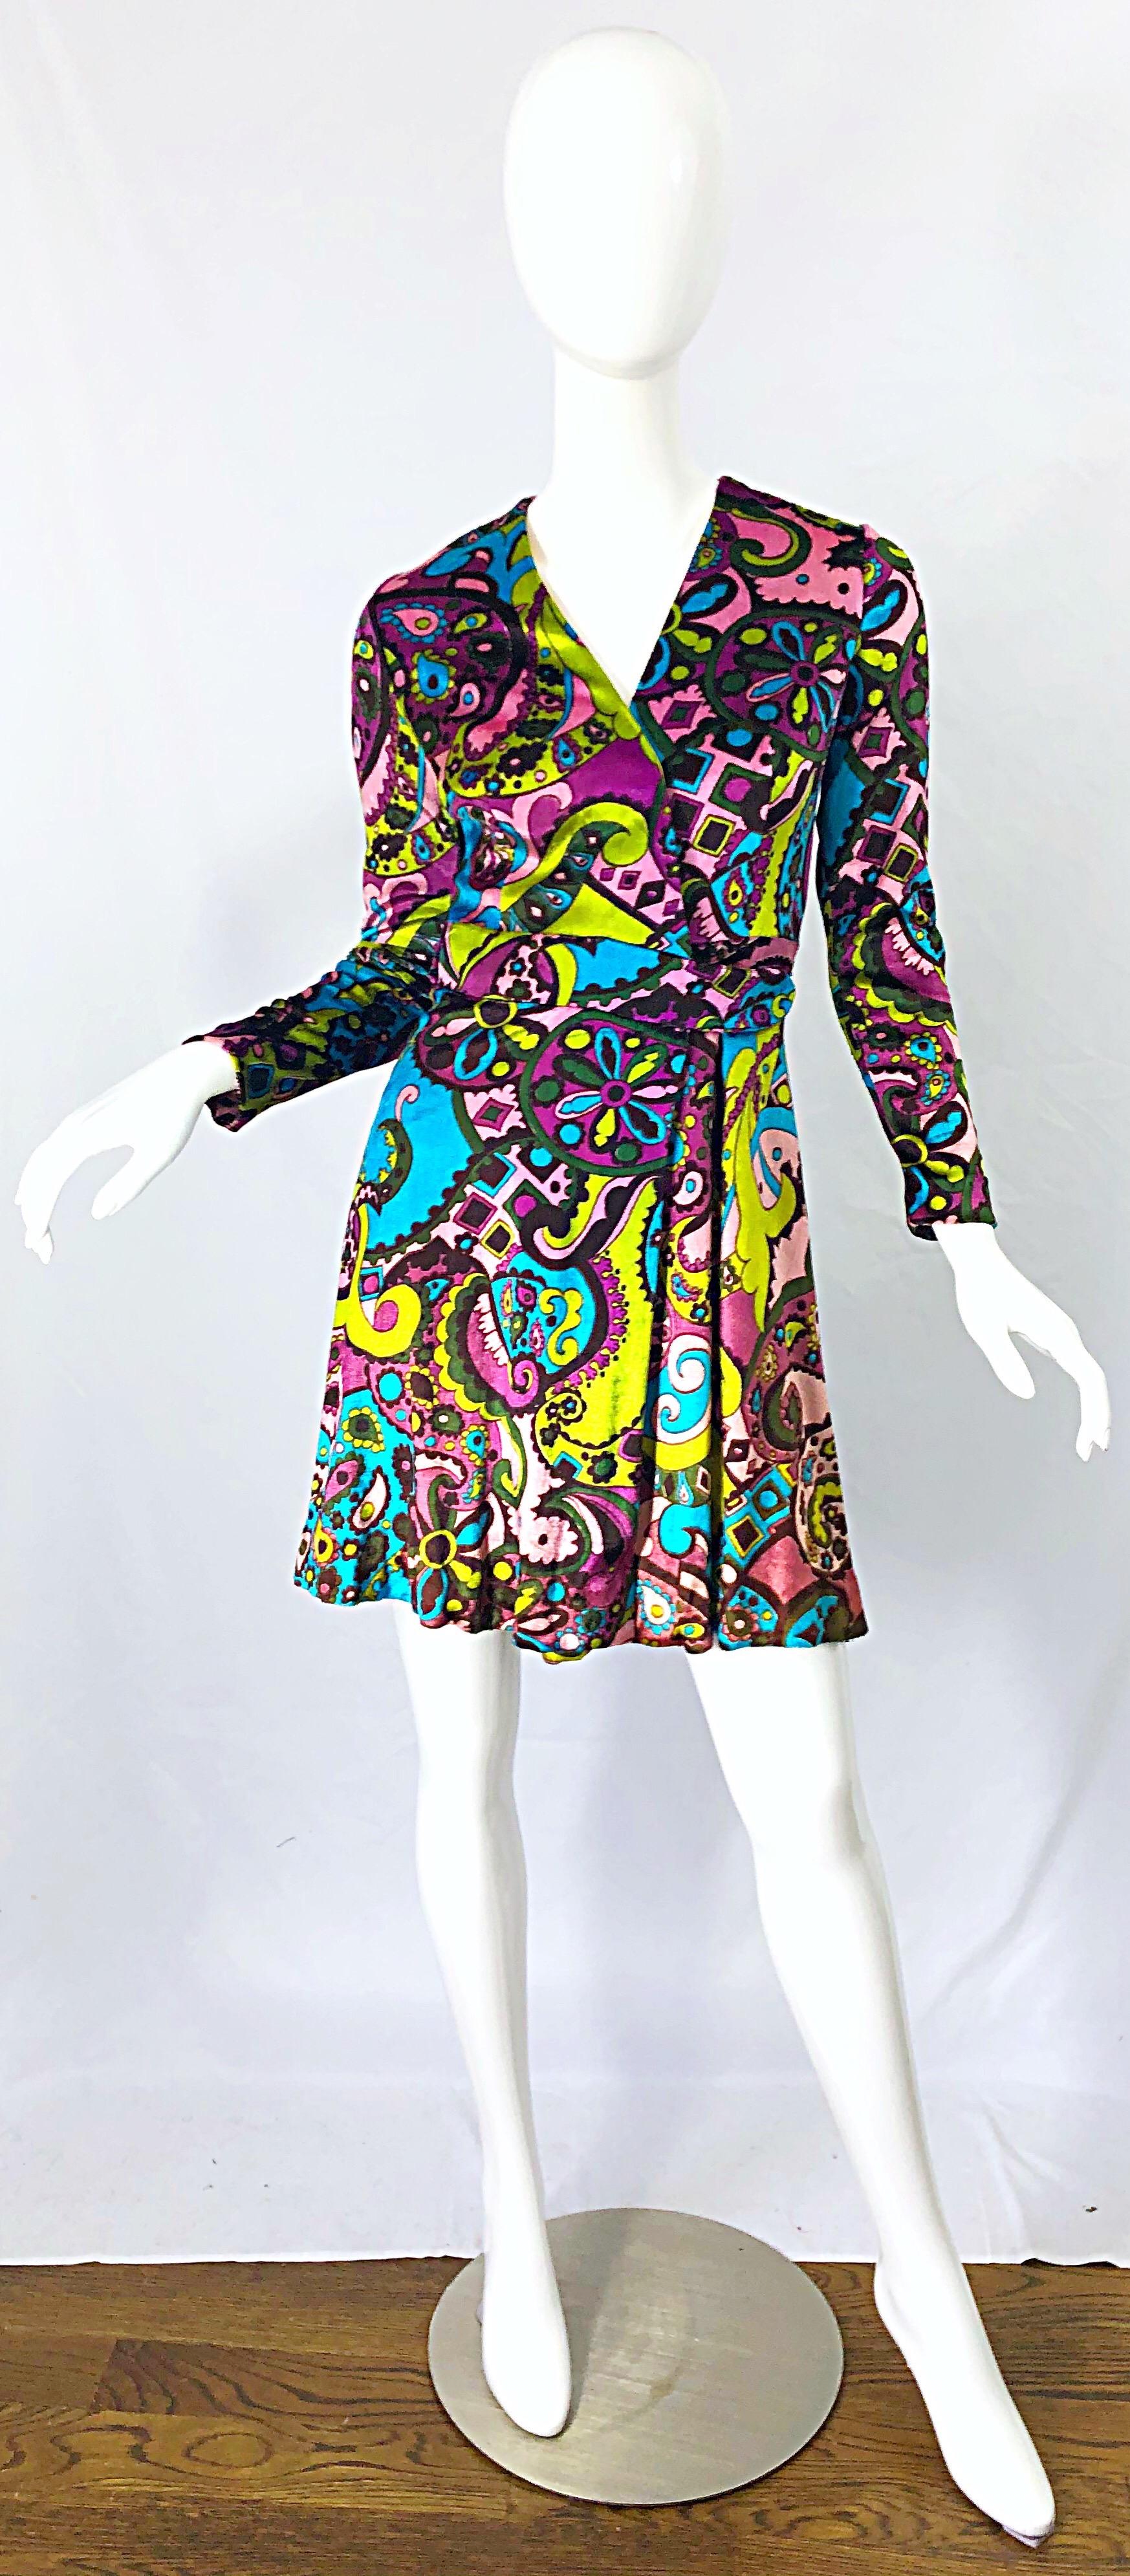 Superbe robe cachemire psychédélique en velours coloré des années 1970 ! Des couleurs vibrantes de rose, bleu, vert, turquoise, vert chartreuse et violet. Attaches intérieures sur le côté gauche de la taille, avec fermeture par crochet et œillet sur